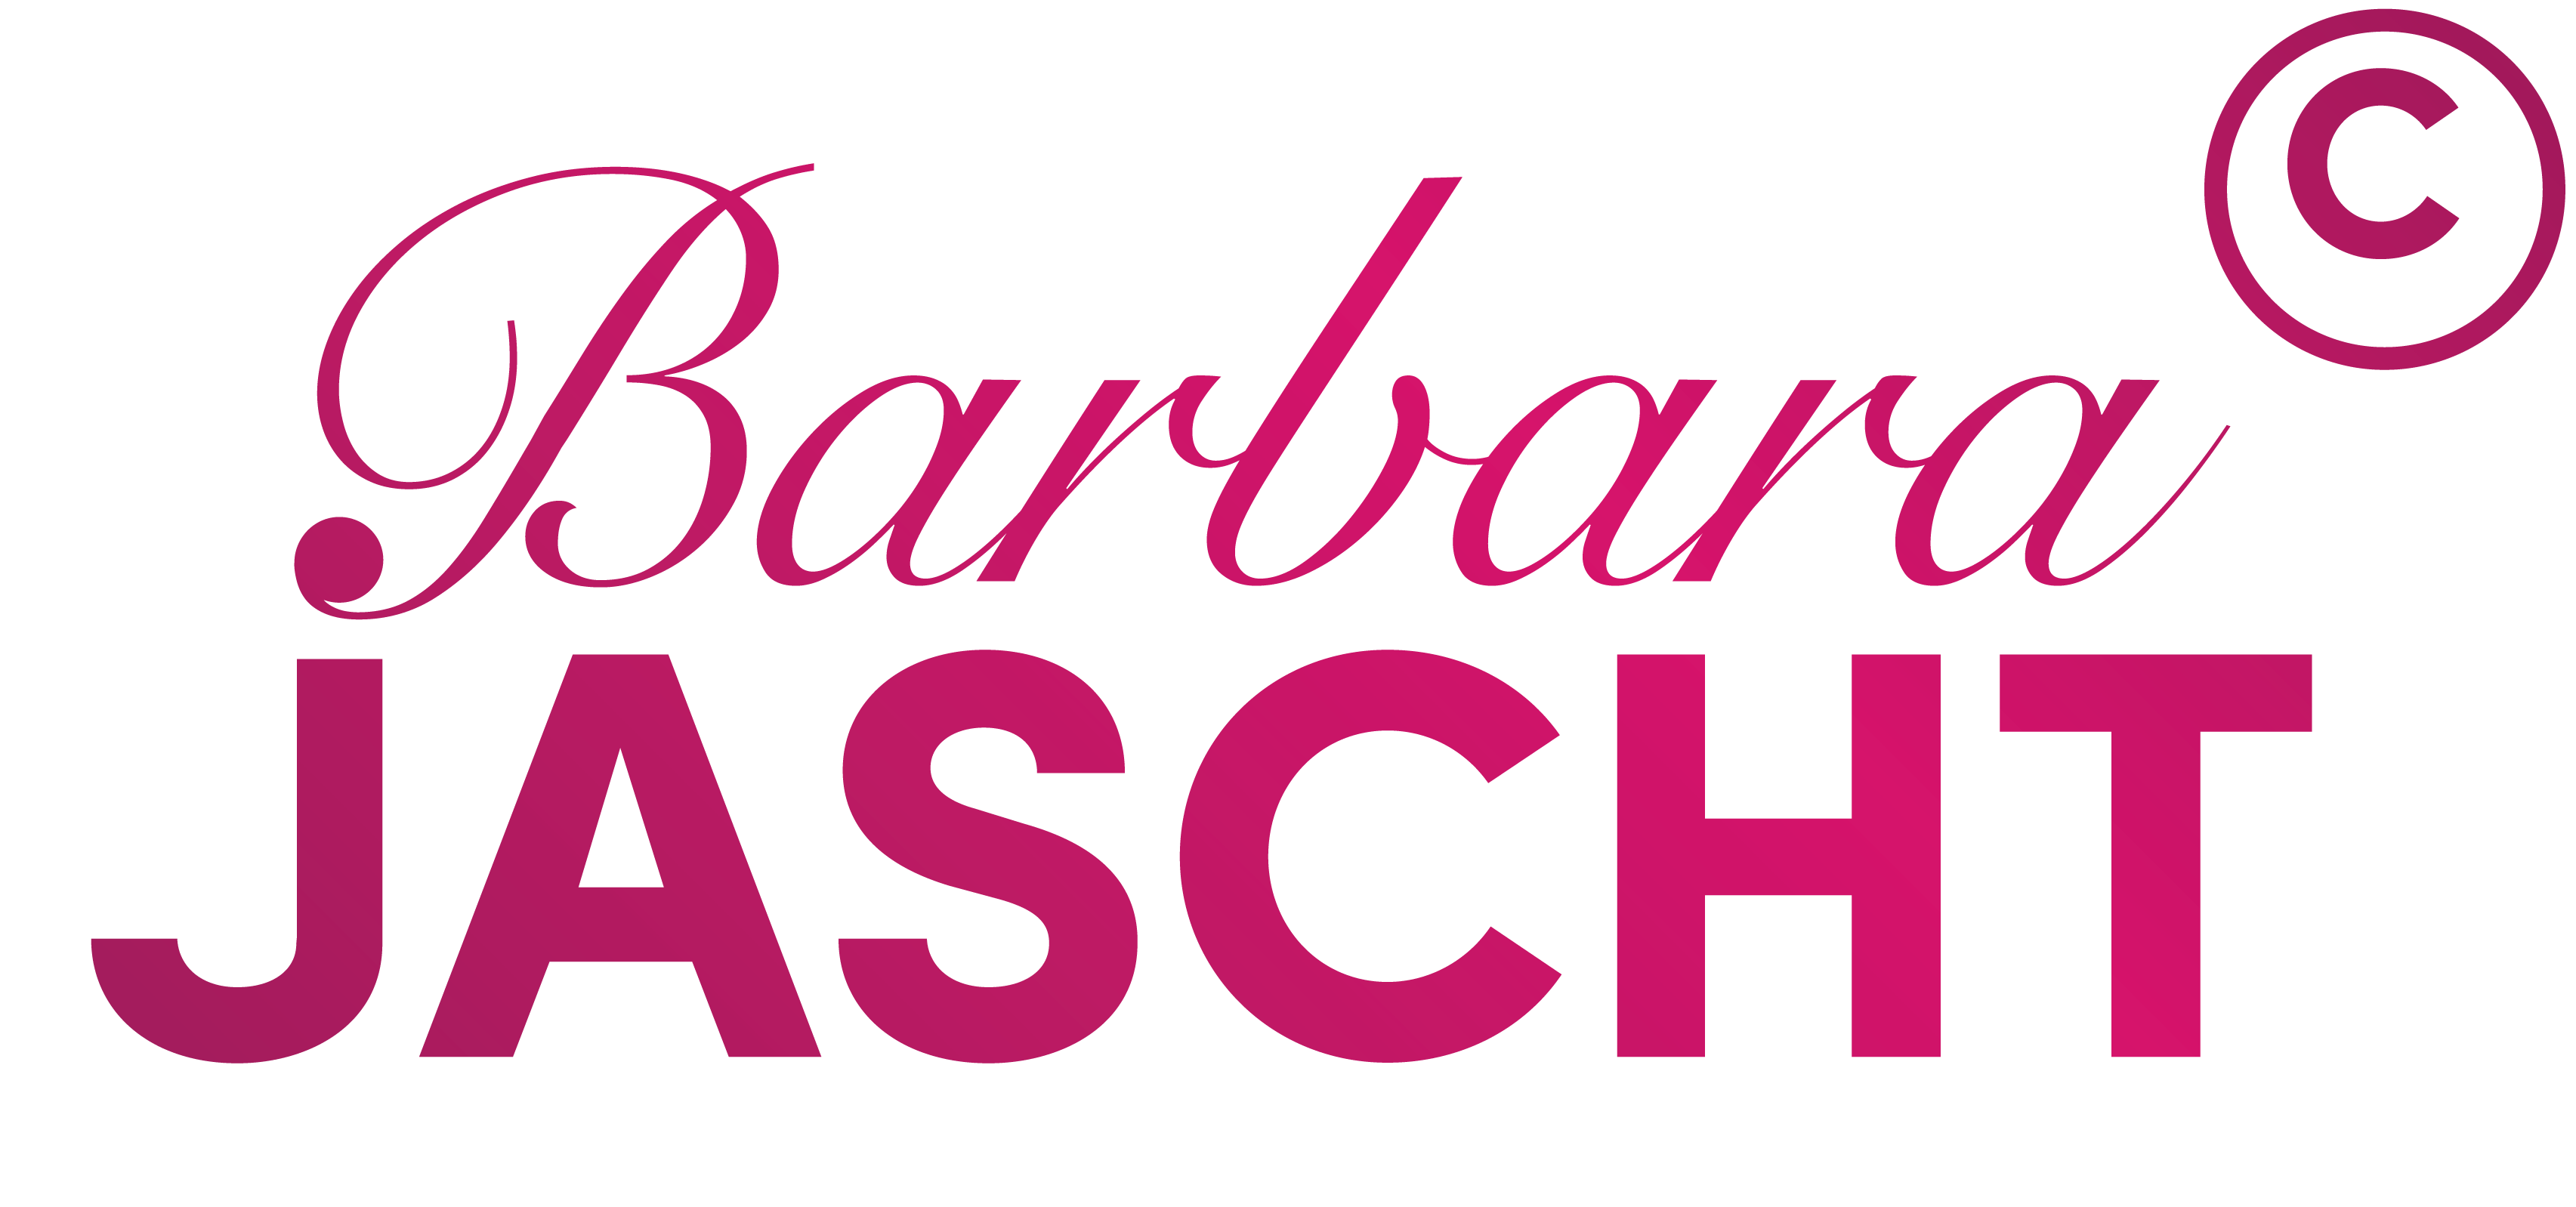 Jascht Jascht Logo Mindset Strategien